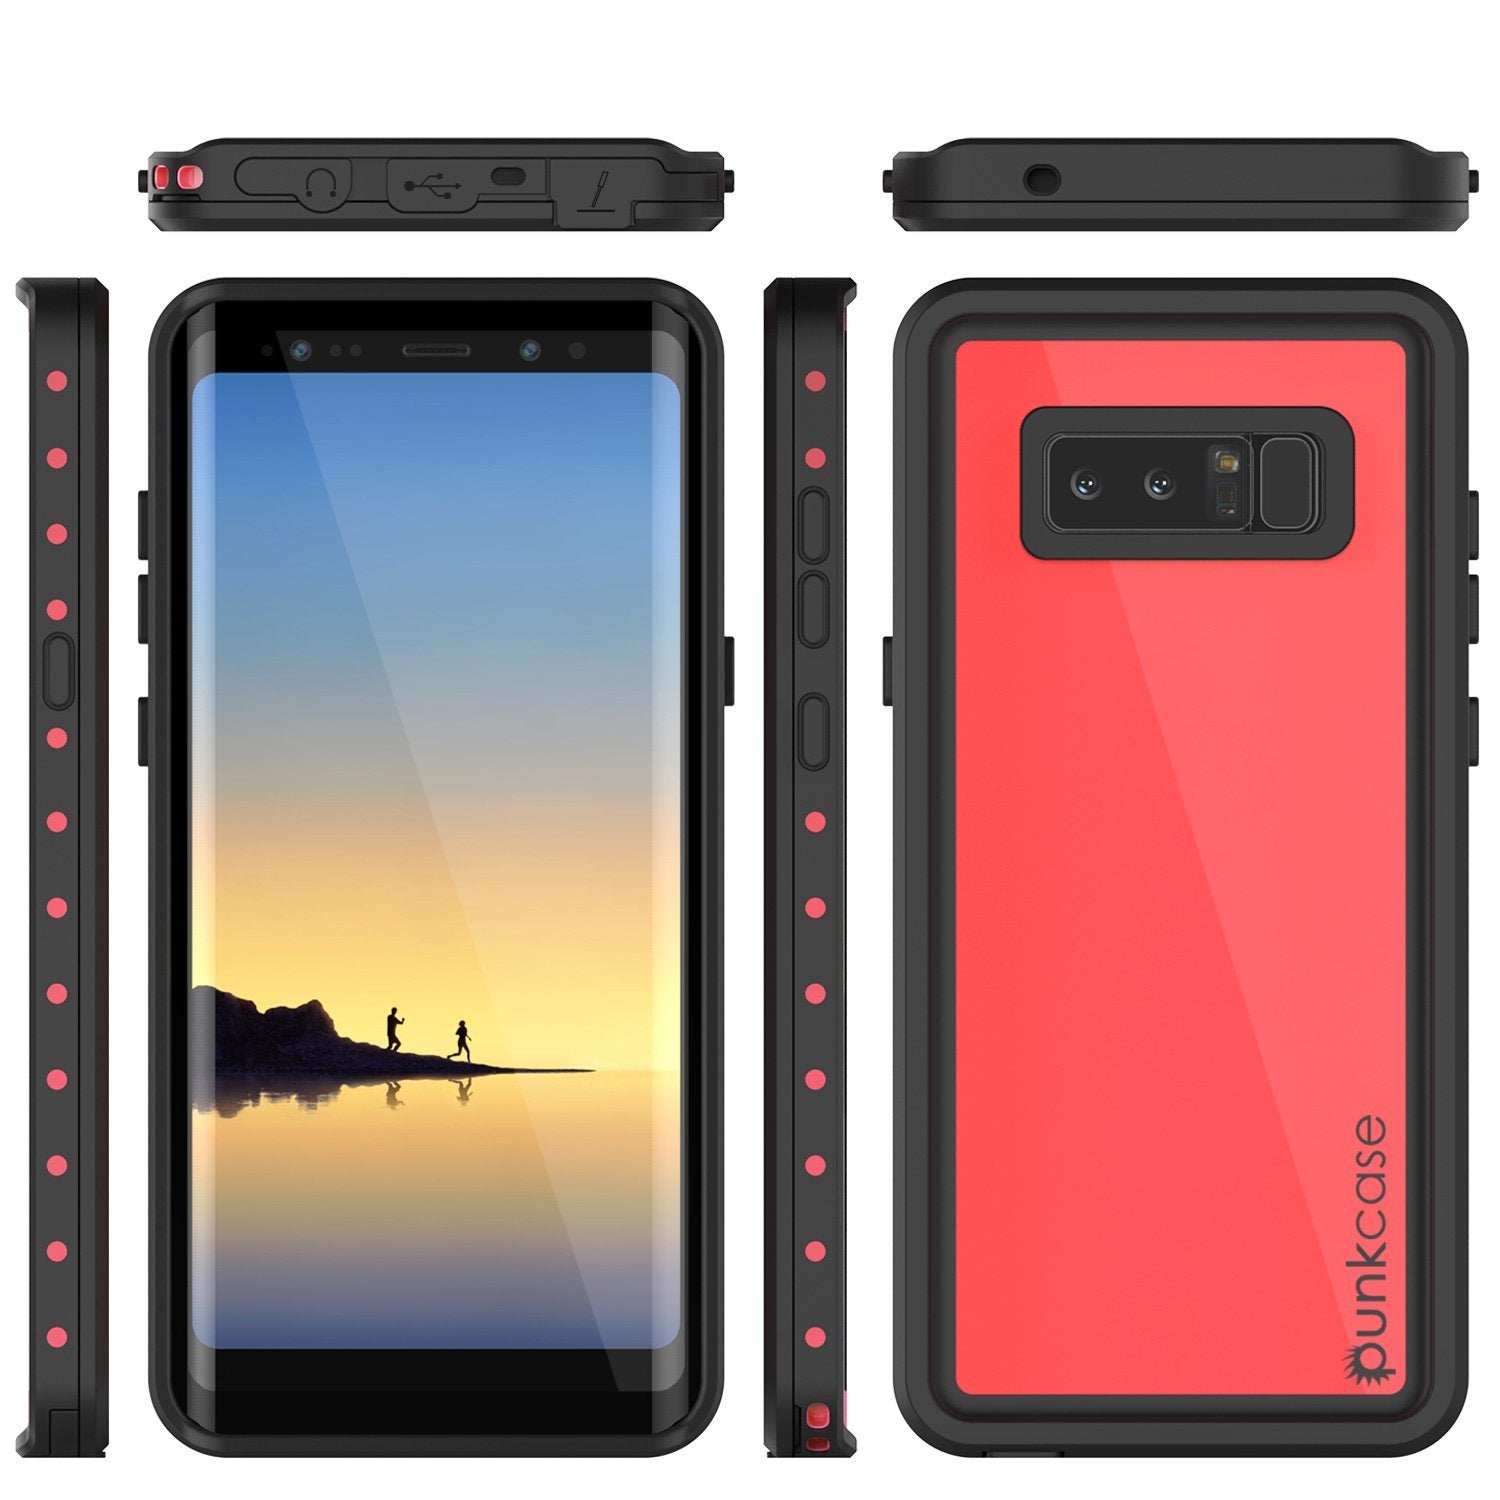 Galaxy Note 8 Waterproof Case PunkCase StudStar Pink